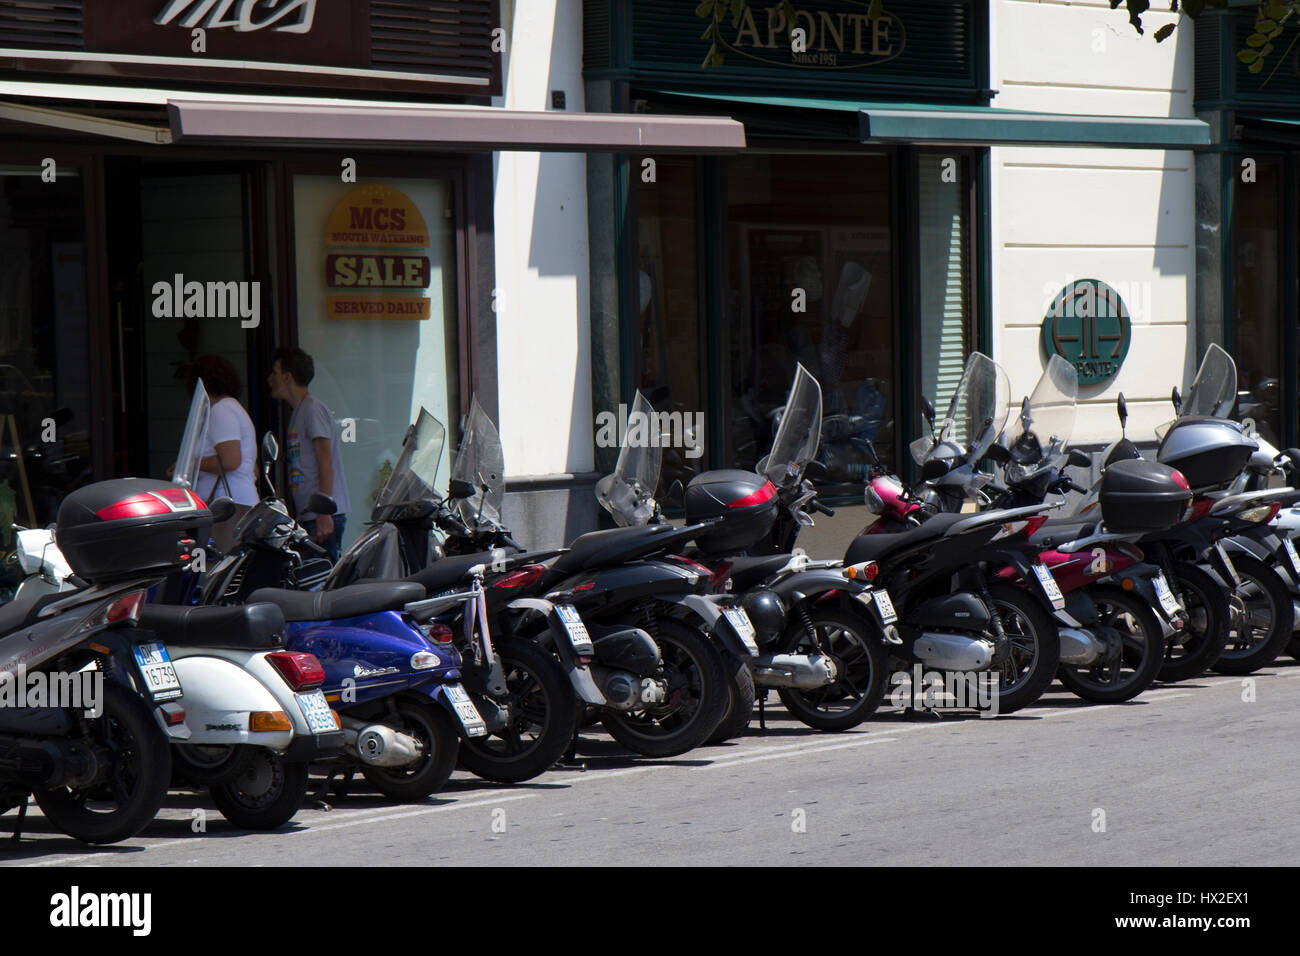 Les motos alignées sur le côté de la route, Sorrento, Italie Banque D'Images